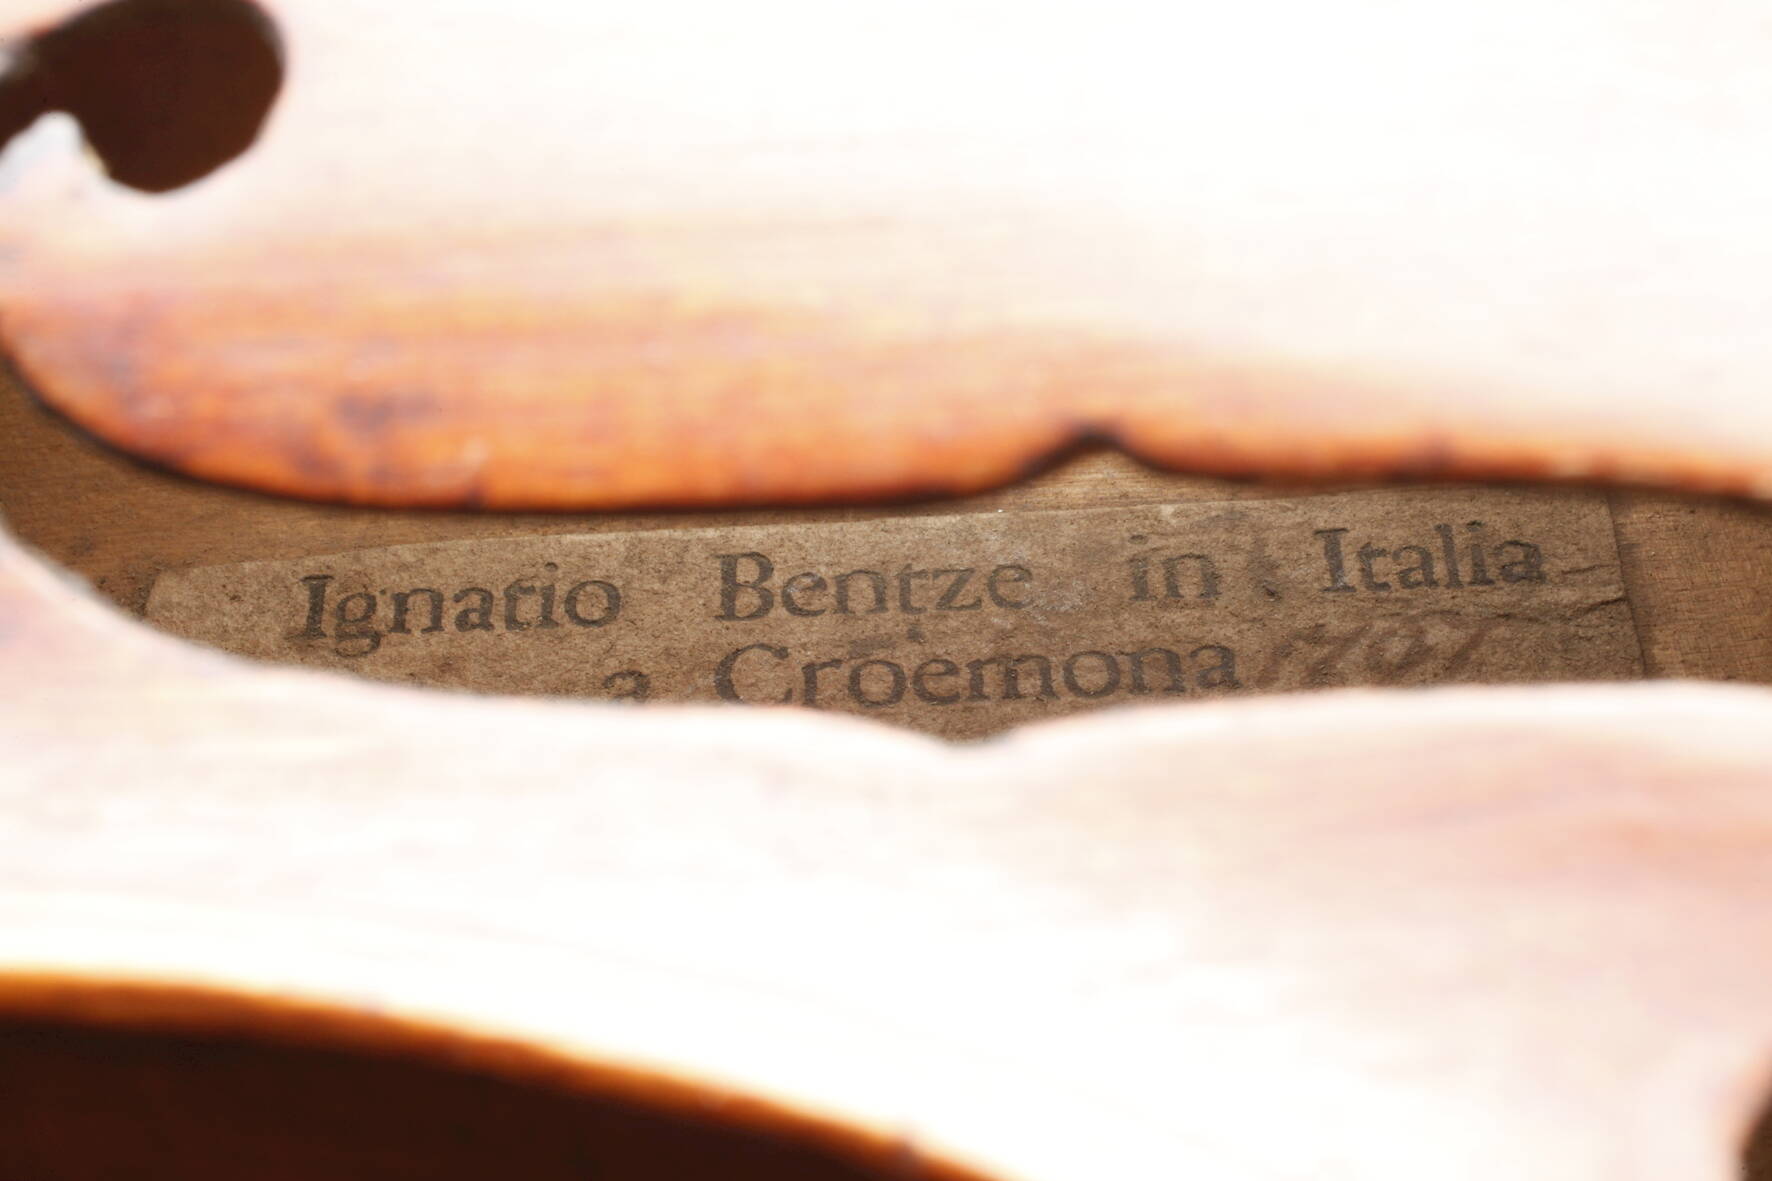 Violineinnen auf Klebezettel bezeichnet Ignatio Bentze in Italia a Croemona 1797, geteilter, eng - Image 7 of 8